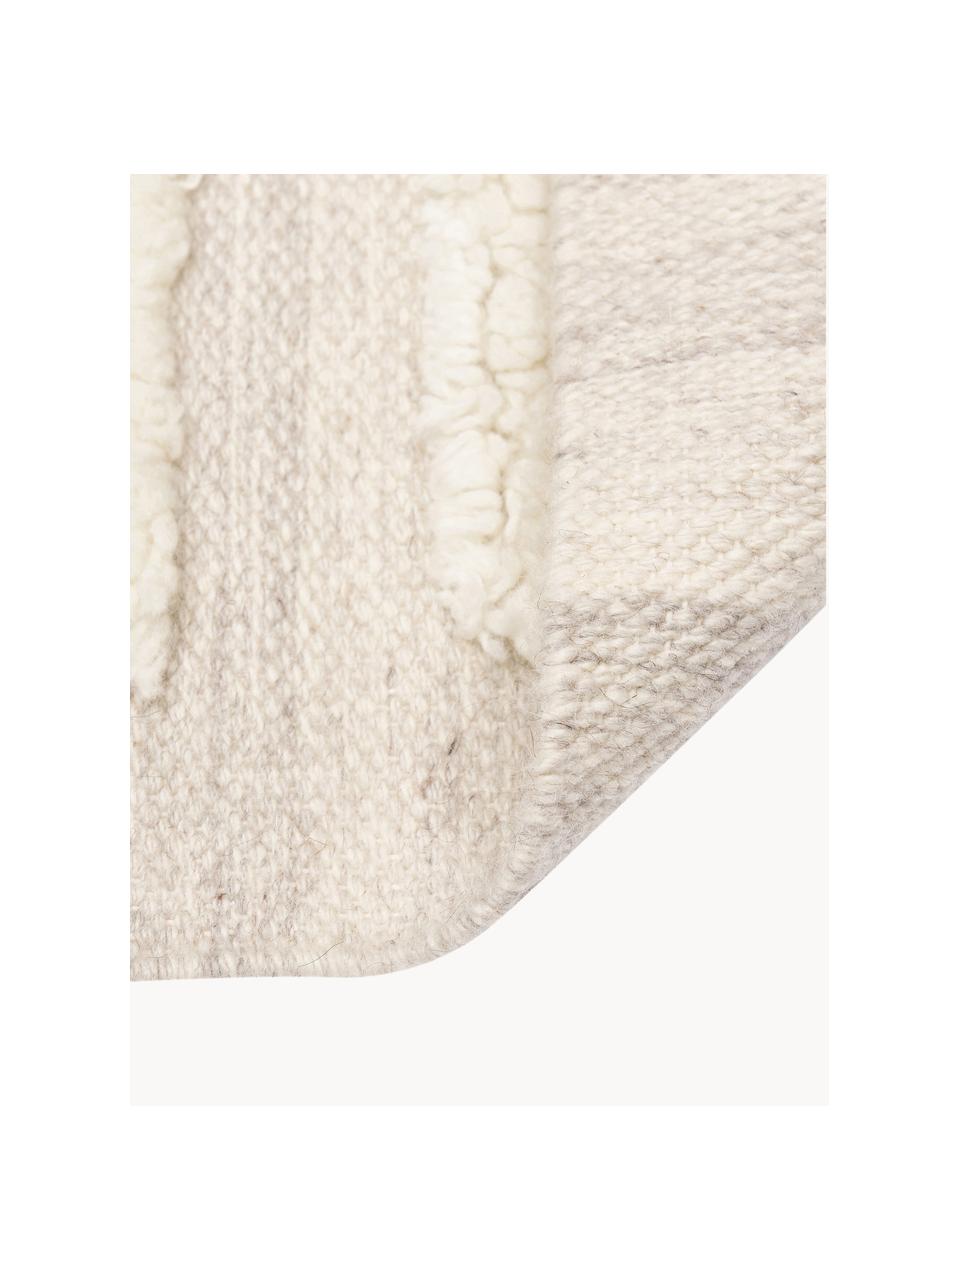 Tapis en laine tissé à la main taupe/beige Anica, Taupe, beige, larg. 80 x long. 150 cm (taille XS)